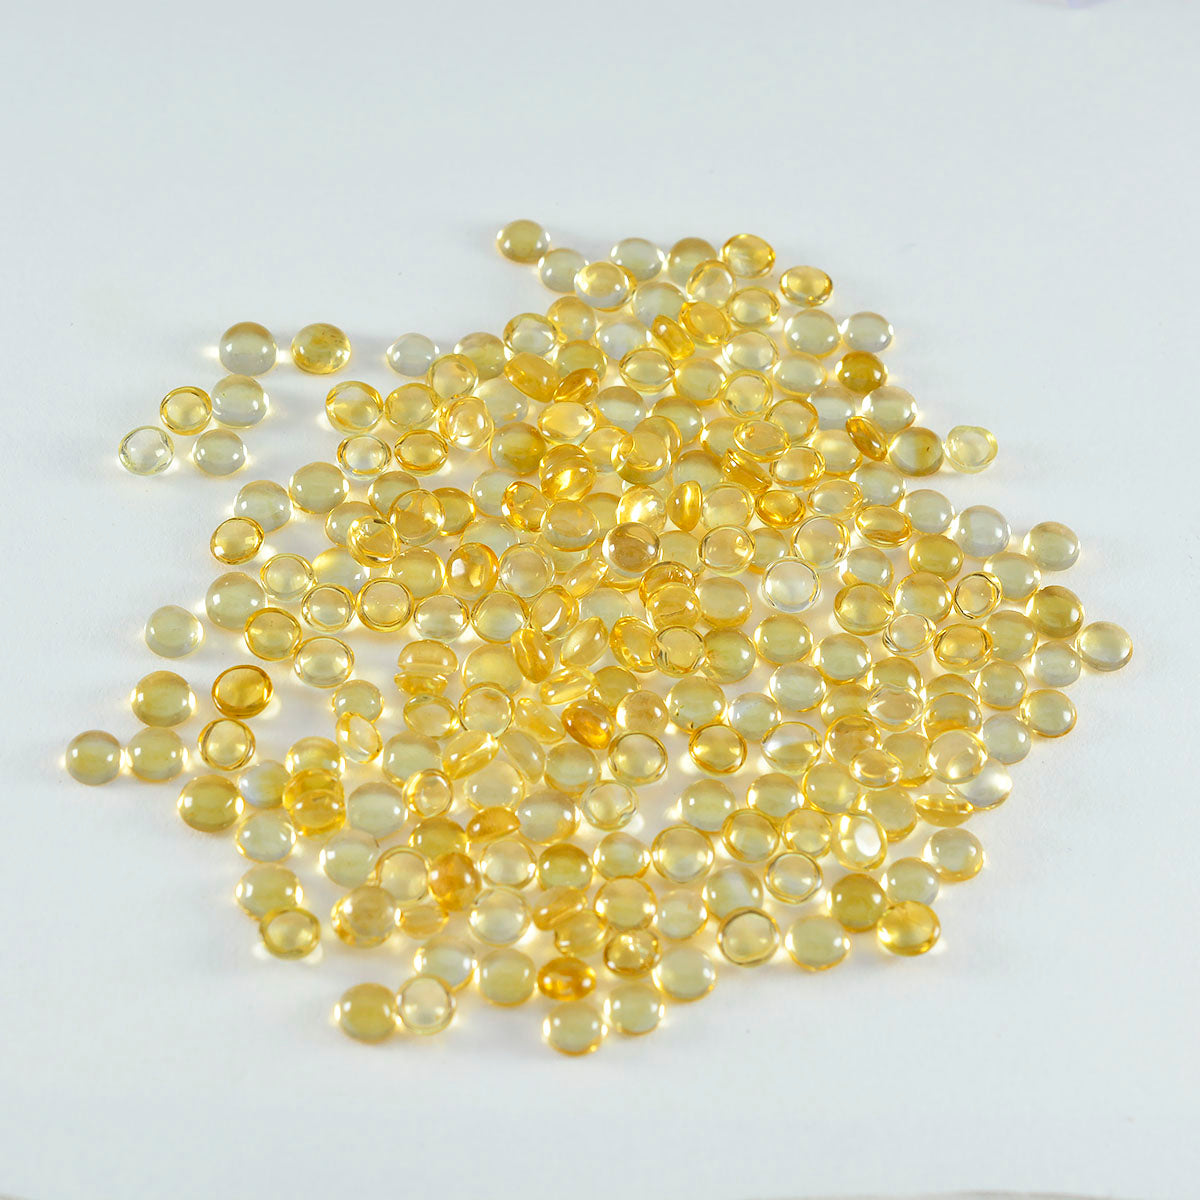 riyogems 1 шт. желтый цитрин кабошон 3x3 мм круглой формы красивый качественный свободный драгоценный камень